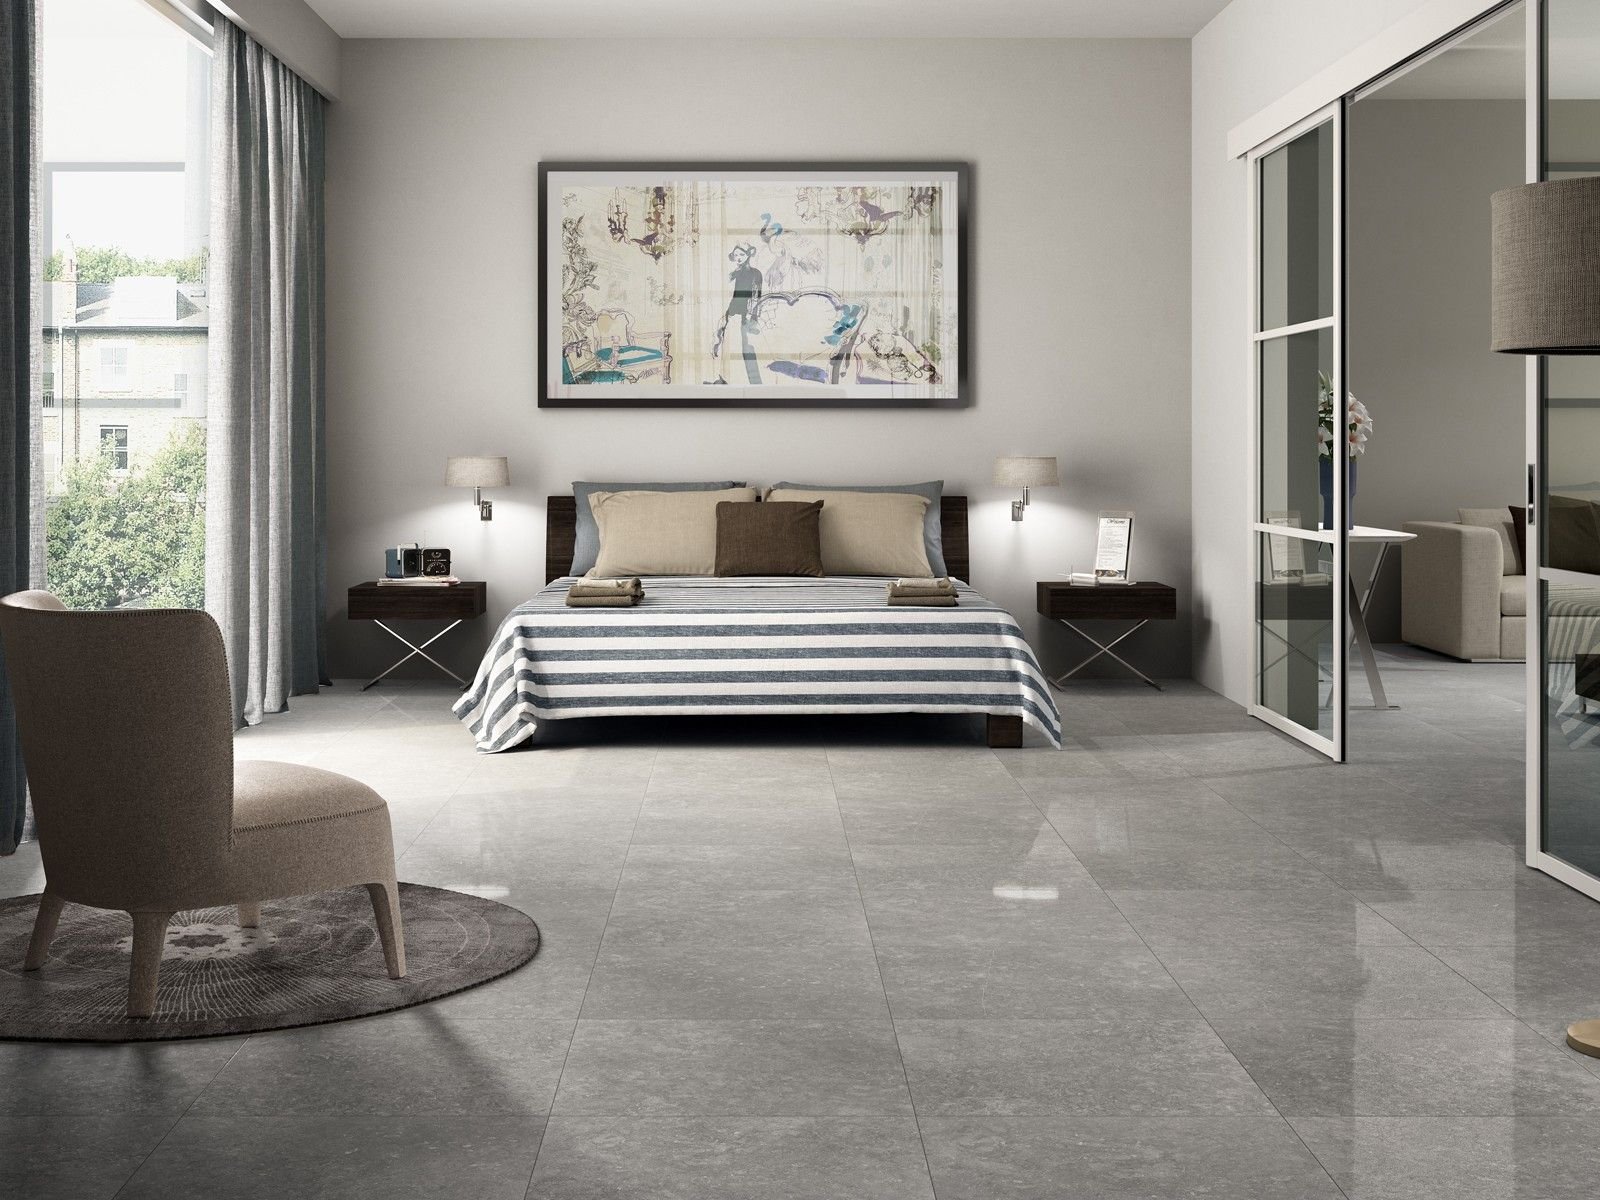 Concrete look floor tiles robustness and aesthetics in one